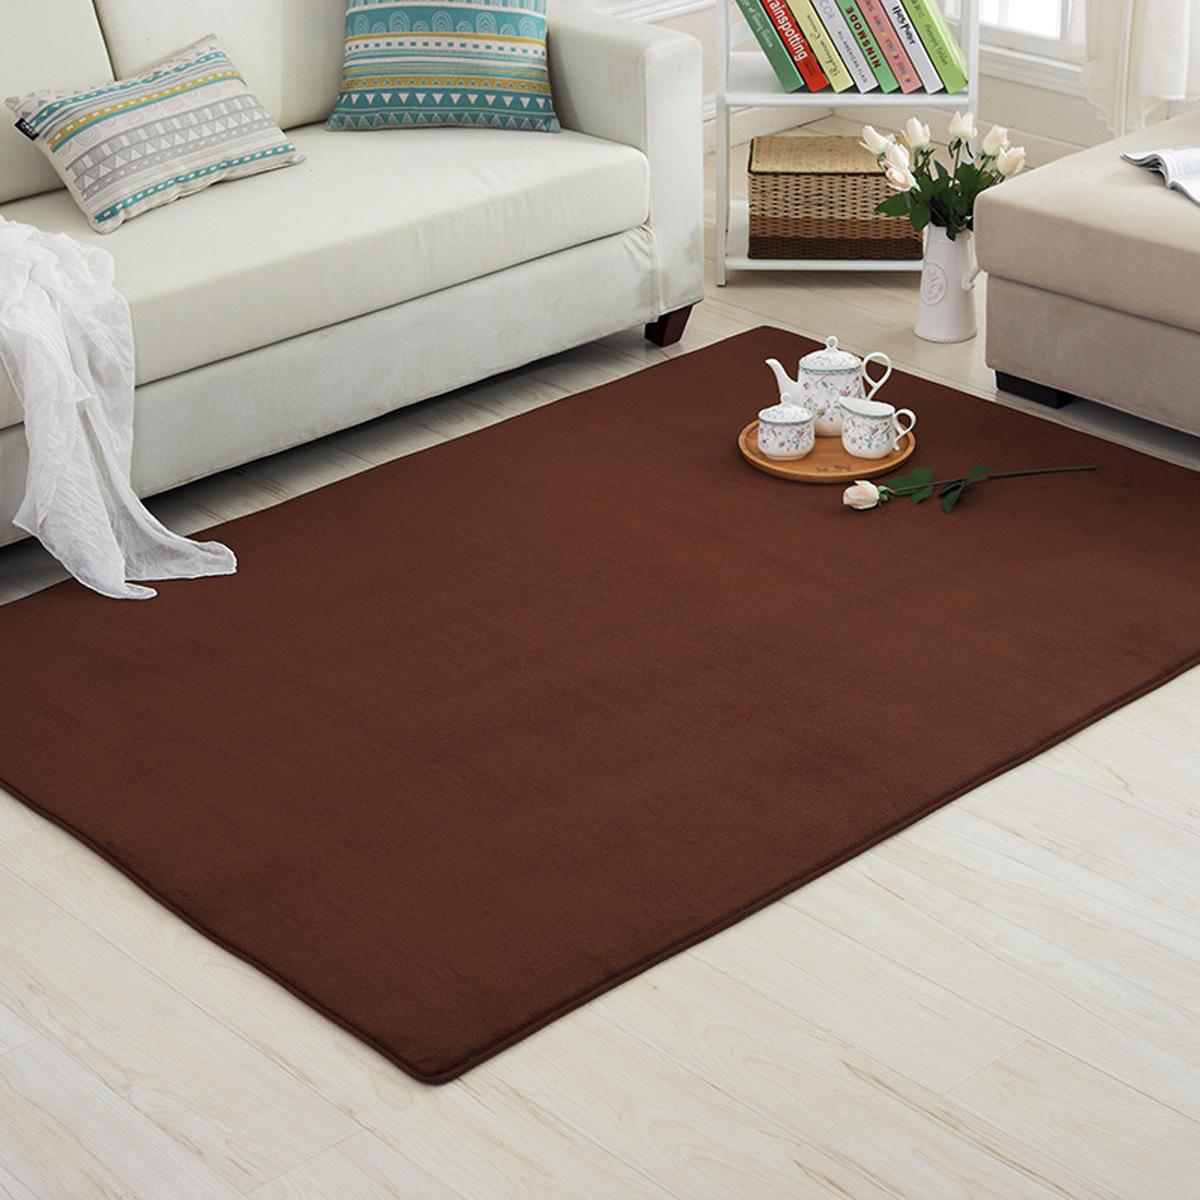 4-Sizes-Carpet-Modern-Living-Room-Area-Carpet-Bedroom-Bedside-Rug-Home-Decoration-1637671-3